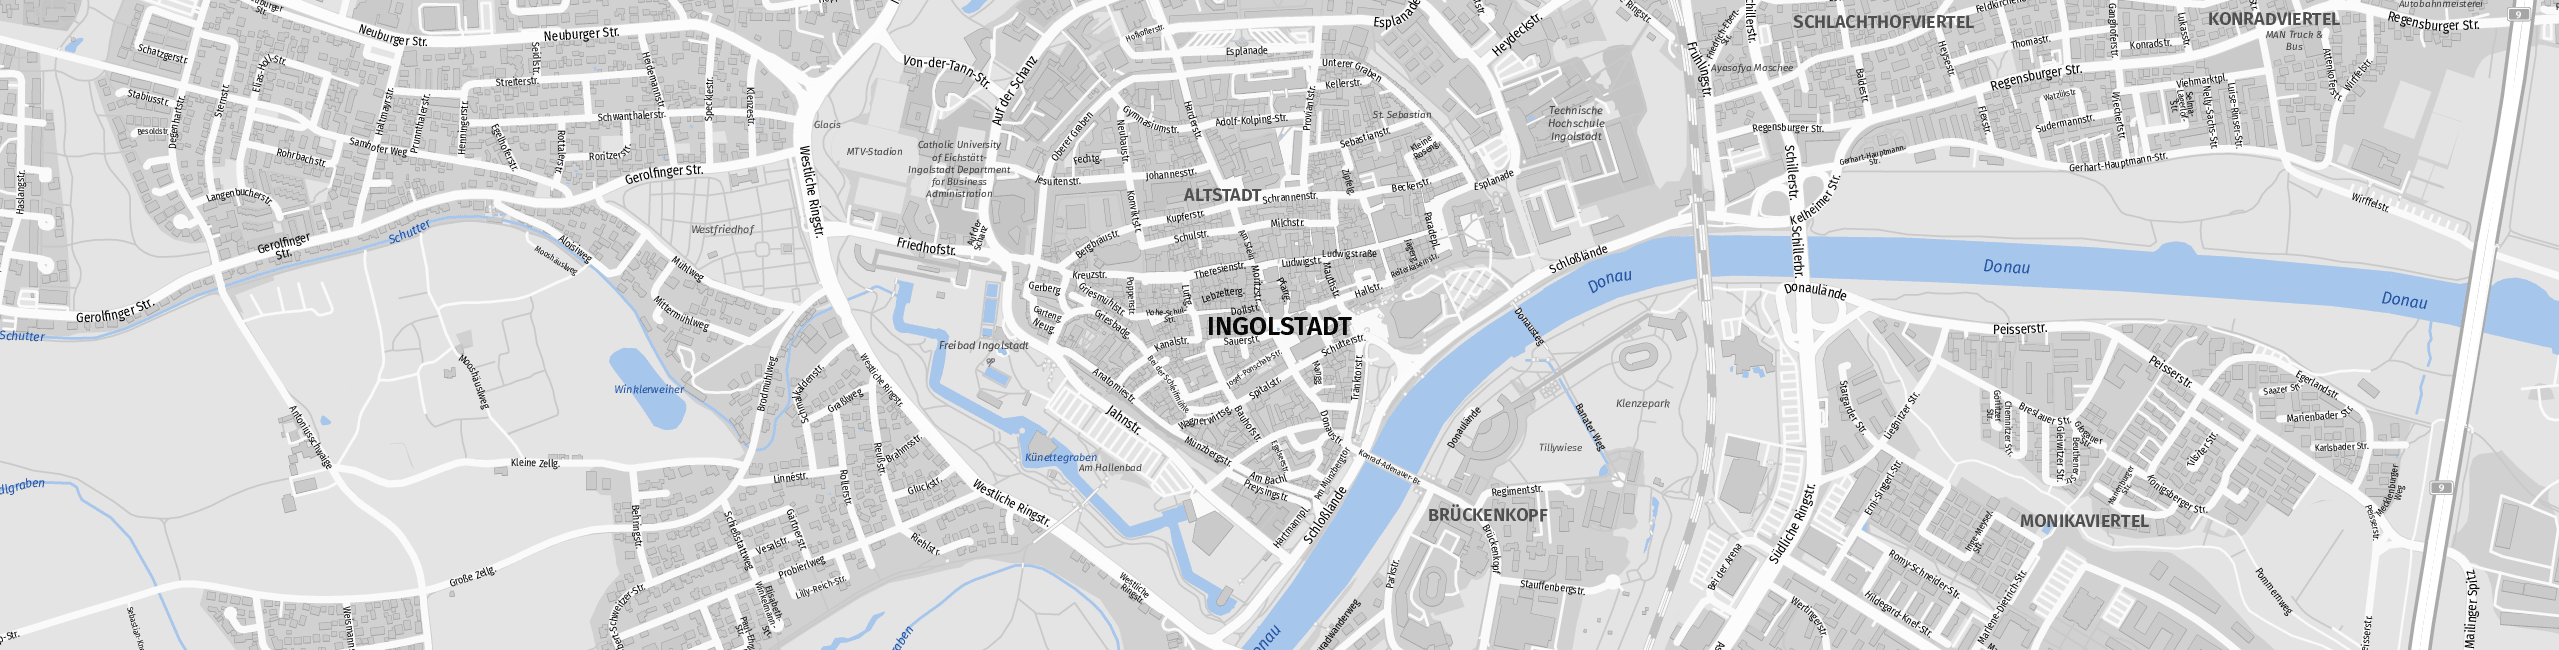 Stadtplan Ingolstadt zum Downloaden.